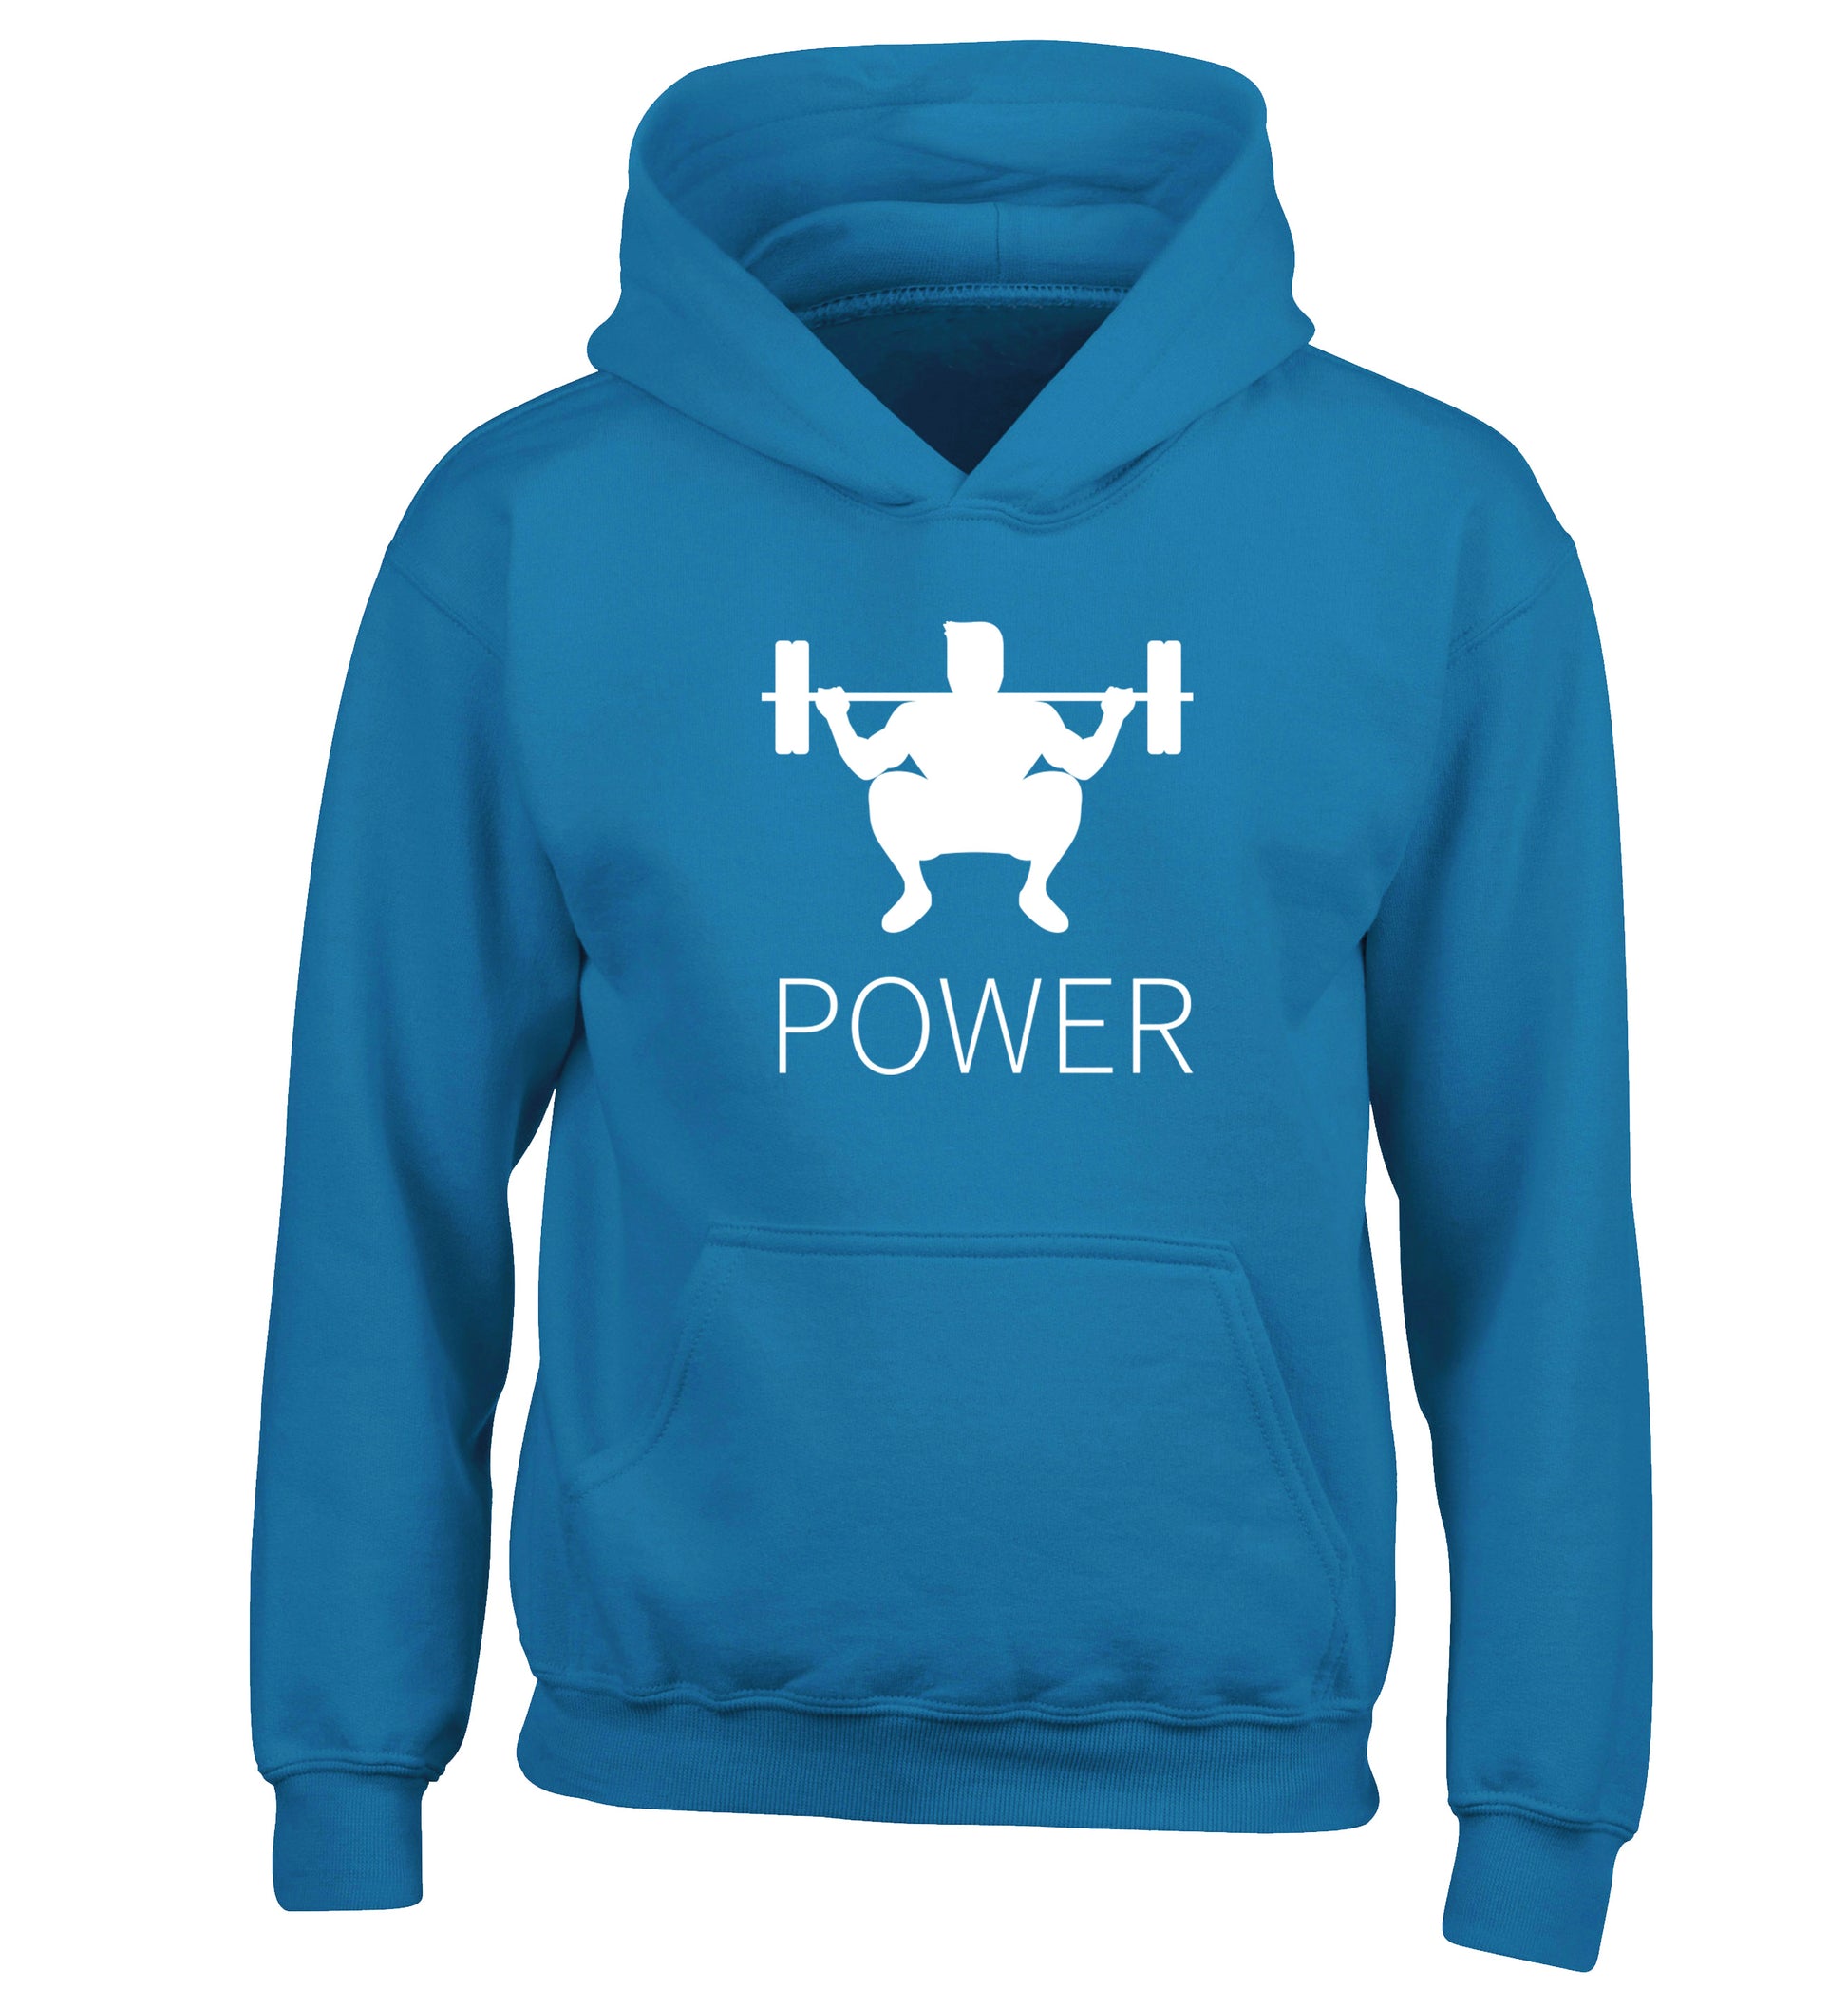 Lift power children's blue hoodie 12-13 Years